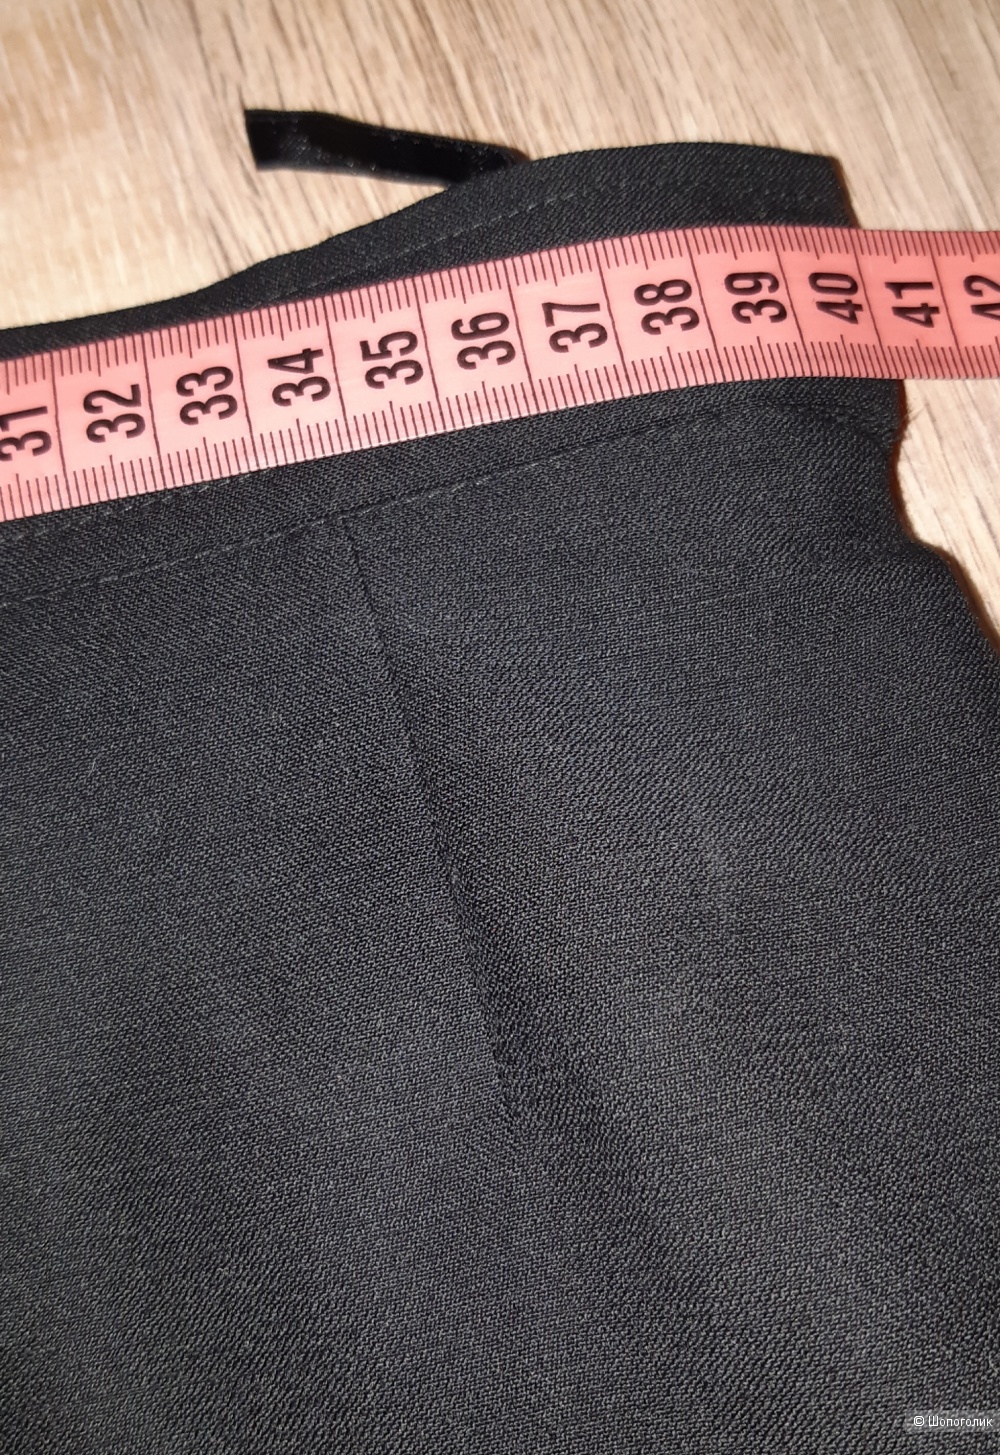 Шерстяная юбка-карандаш austin reed, размер 46/48